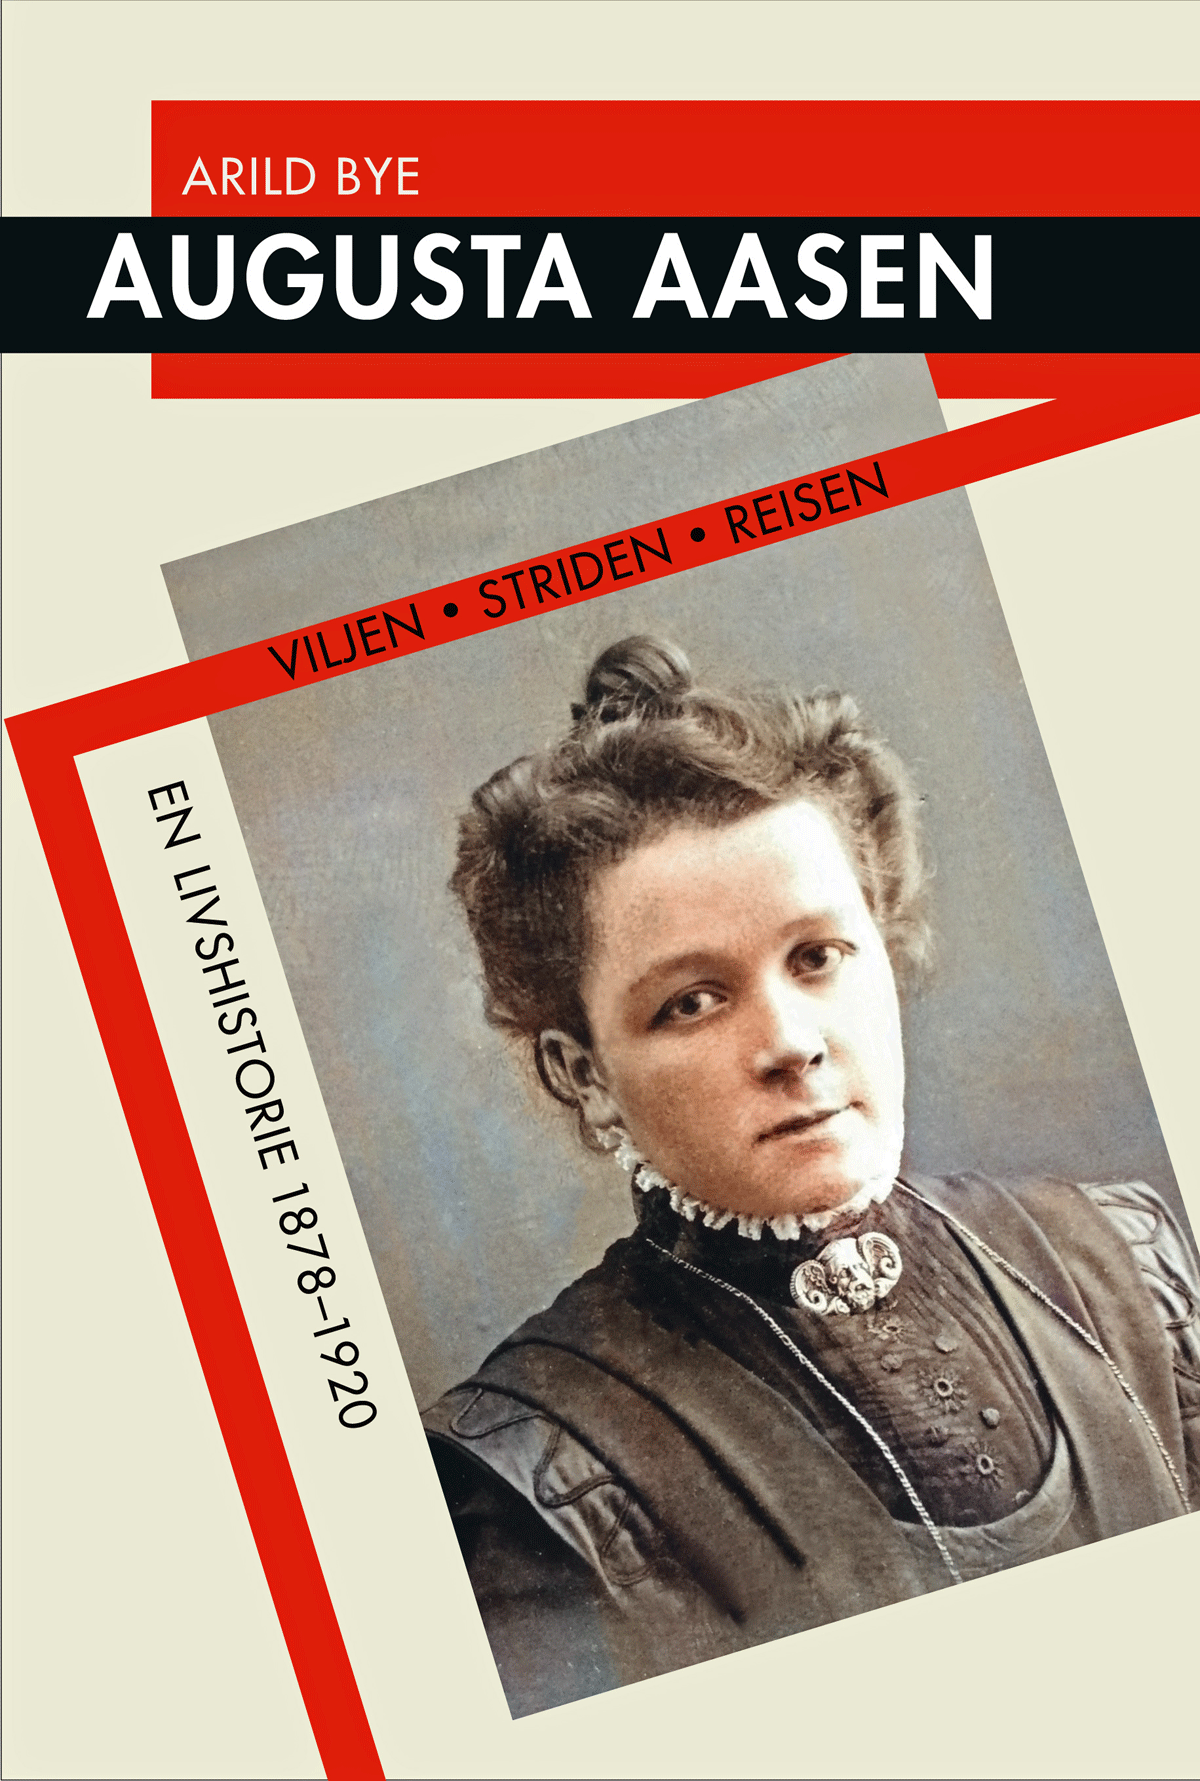 Biografi om Augusta Aasen